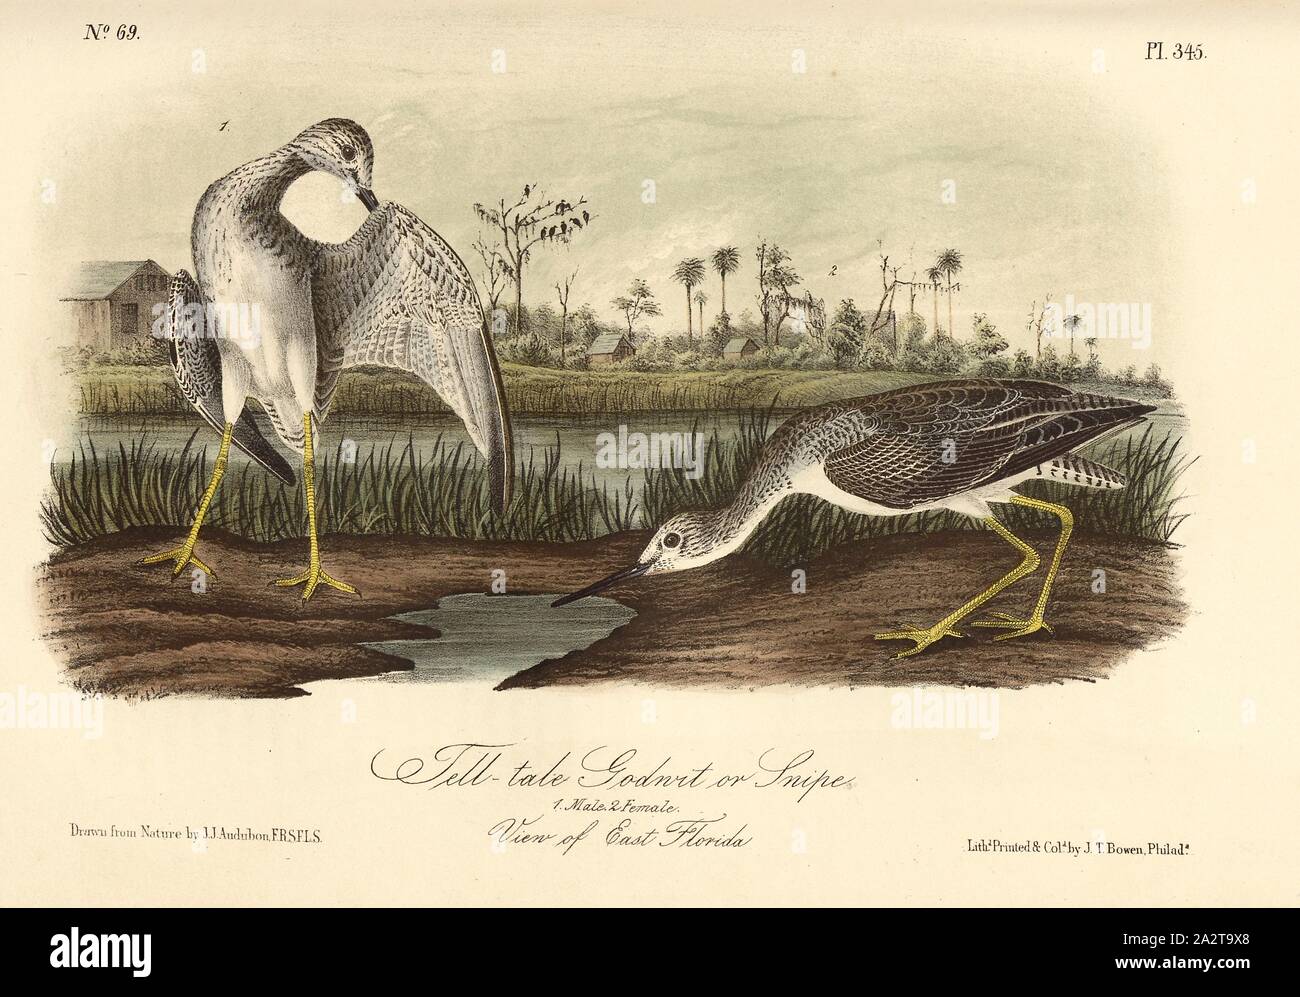 Tell-tale Godwit or Snipe, Black-tailed Godwit (Totanus vociferus), Signed: J.J. Audubon, J.T. Bowen, lithograph, Pl. 345 (Vol. 5), Audubon, John James (drawn); Bowen, J. T. (lith.), 1856, John James Audubon: The birds of America: from drawings made in the United States and their territories. New York: Audubon, 1856 Stock Photo